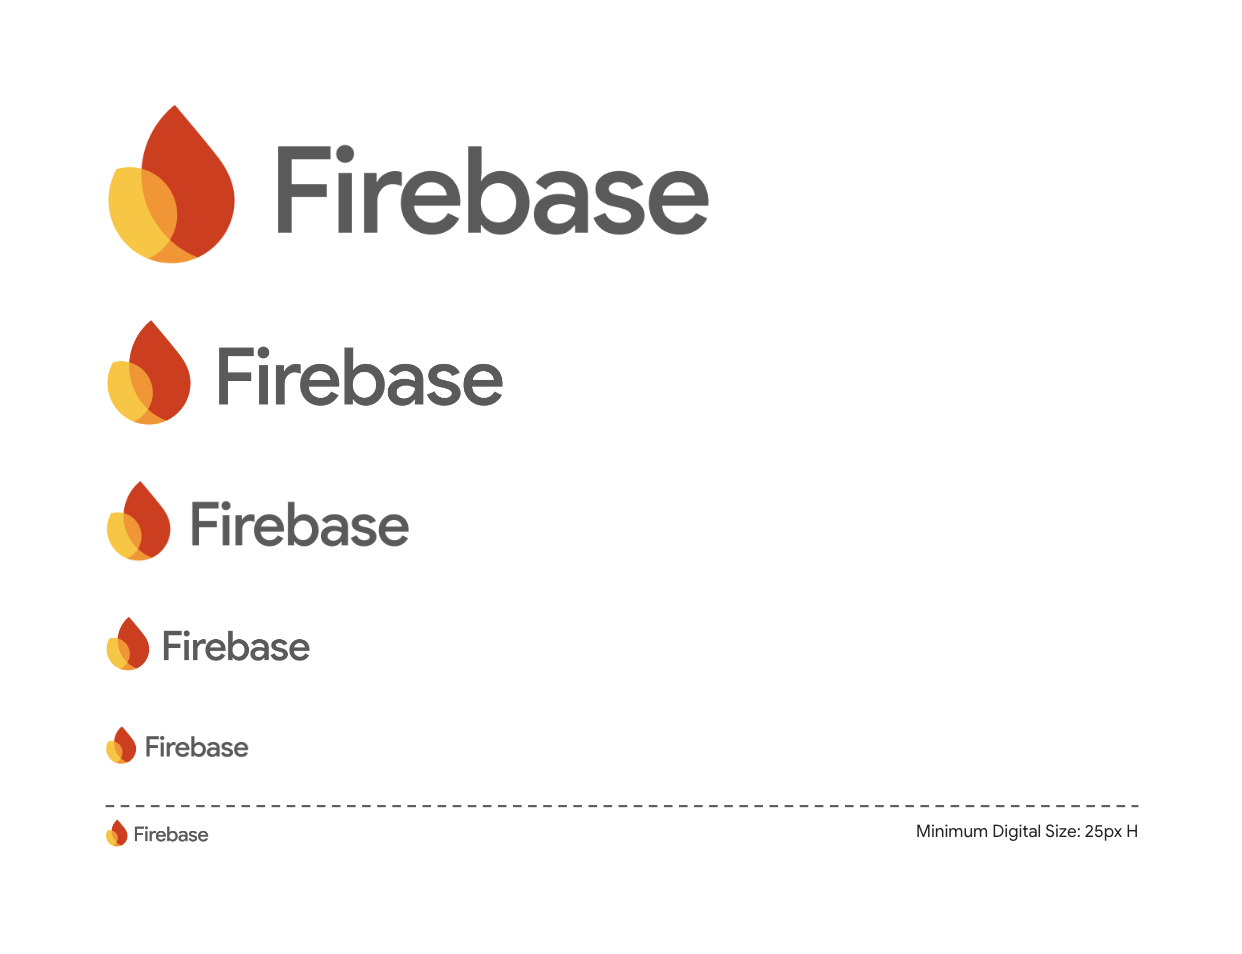 높이가 로고의 2배 이상인 Firebase 로고의 예